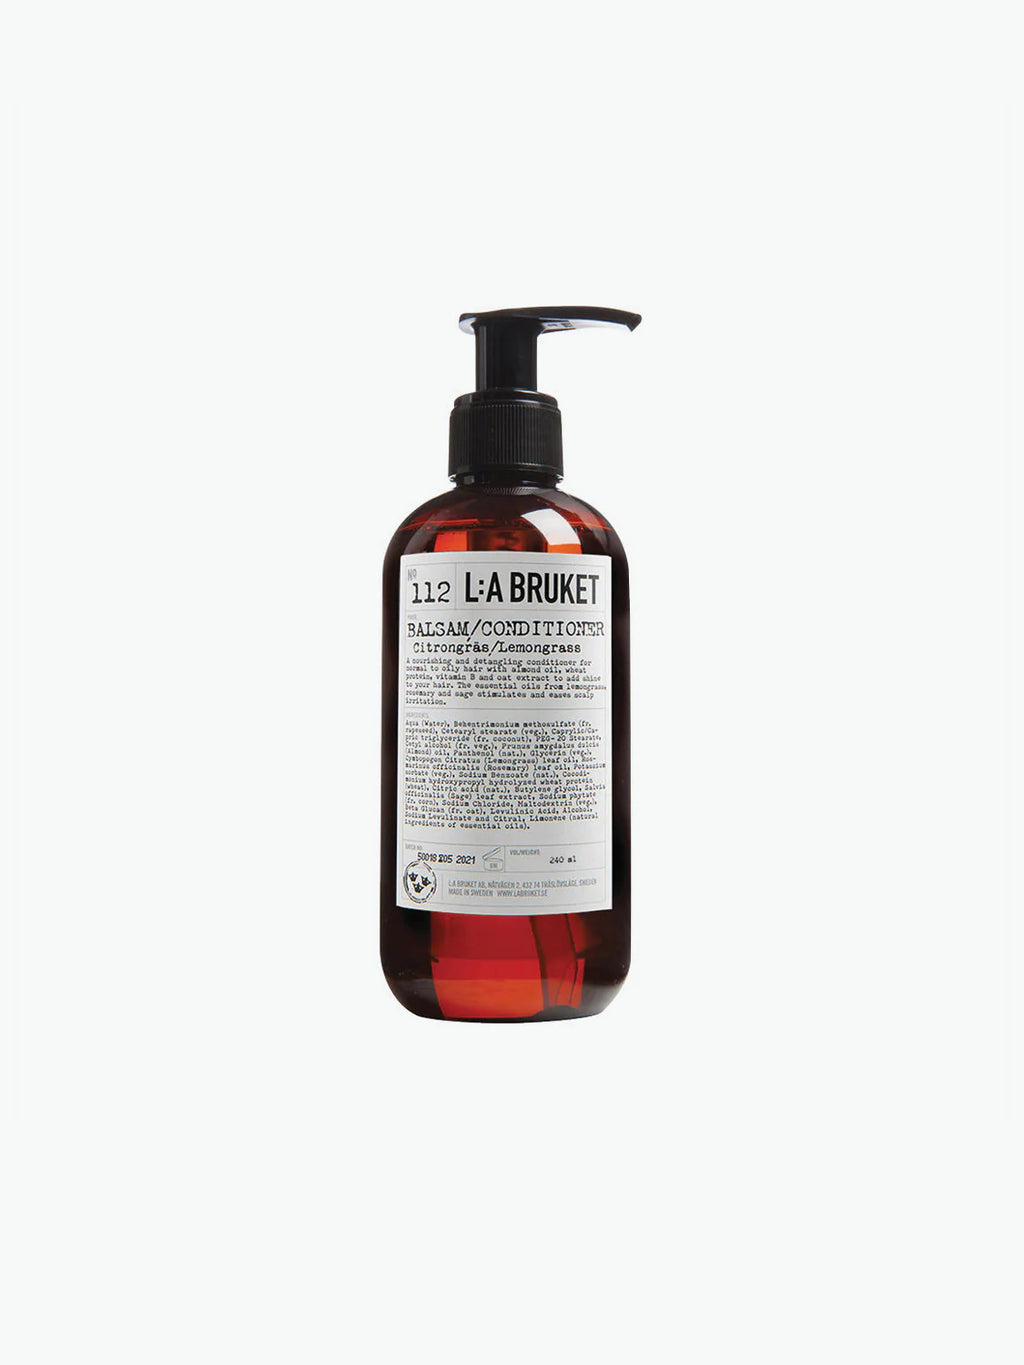 LA Bruket Hair Conditioner Lemongrass | A